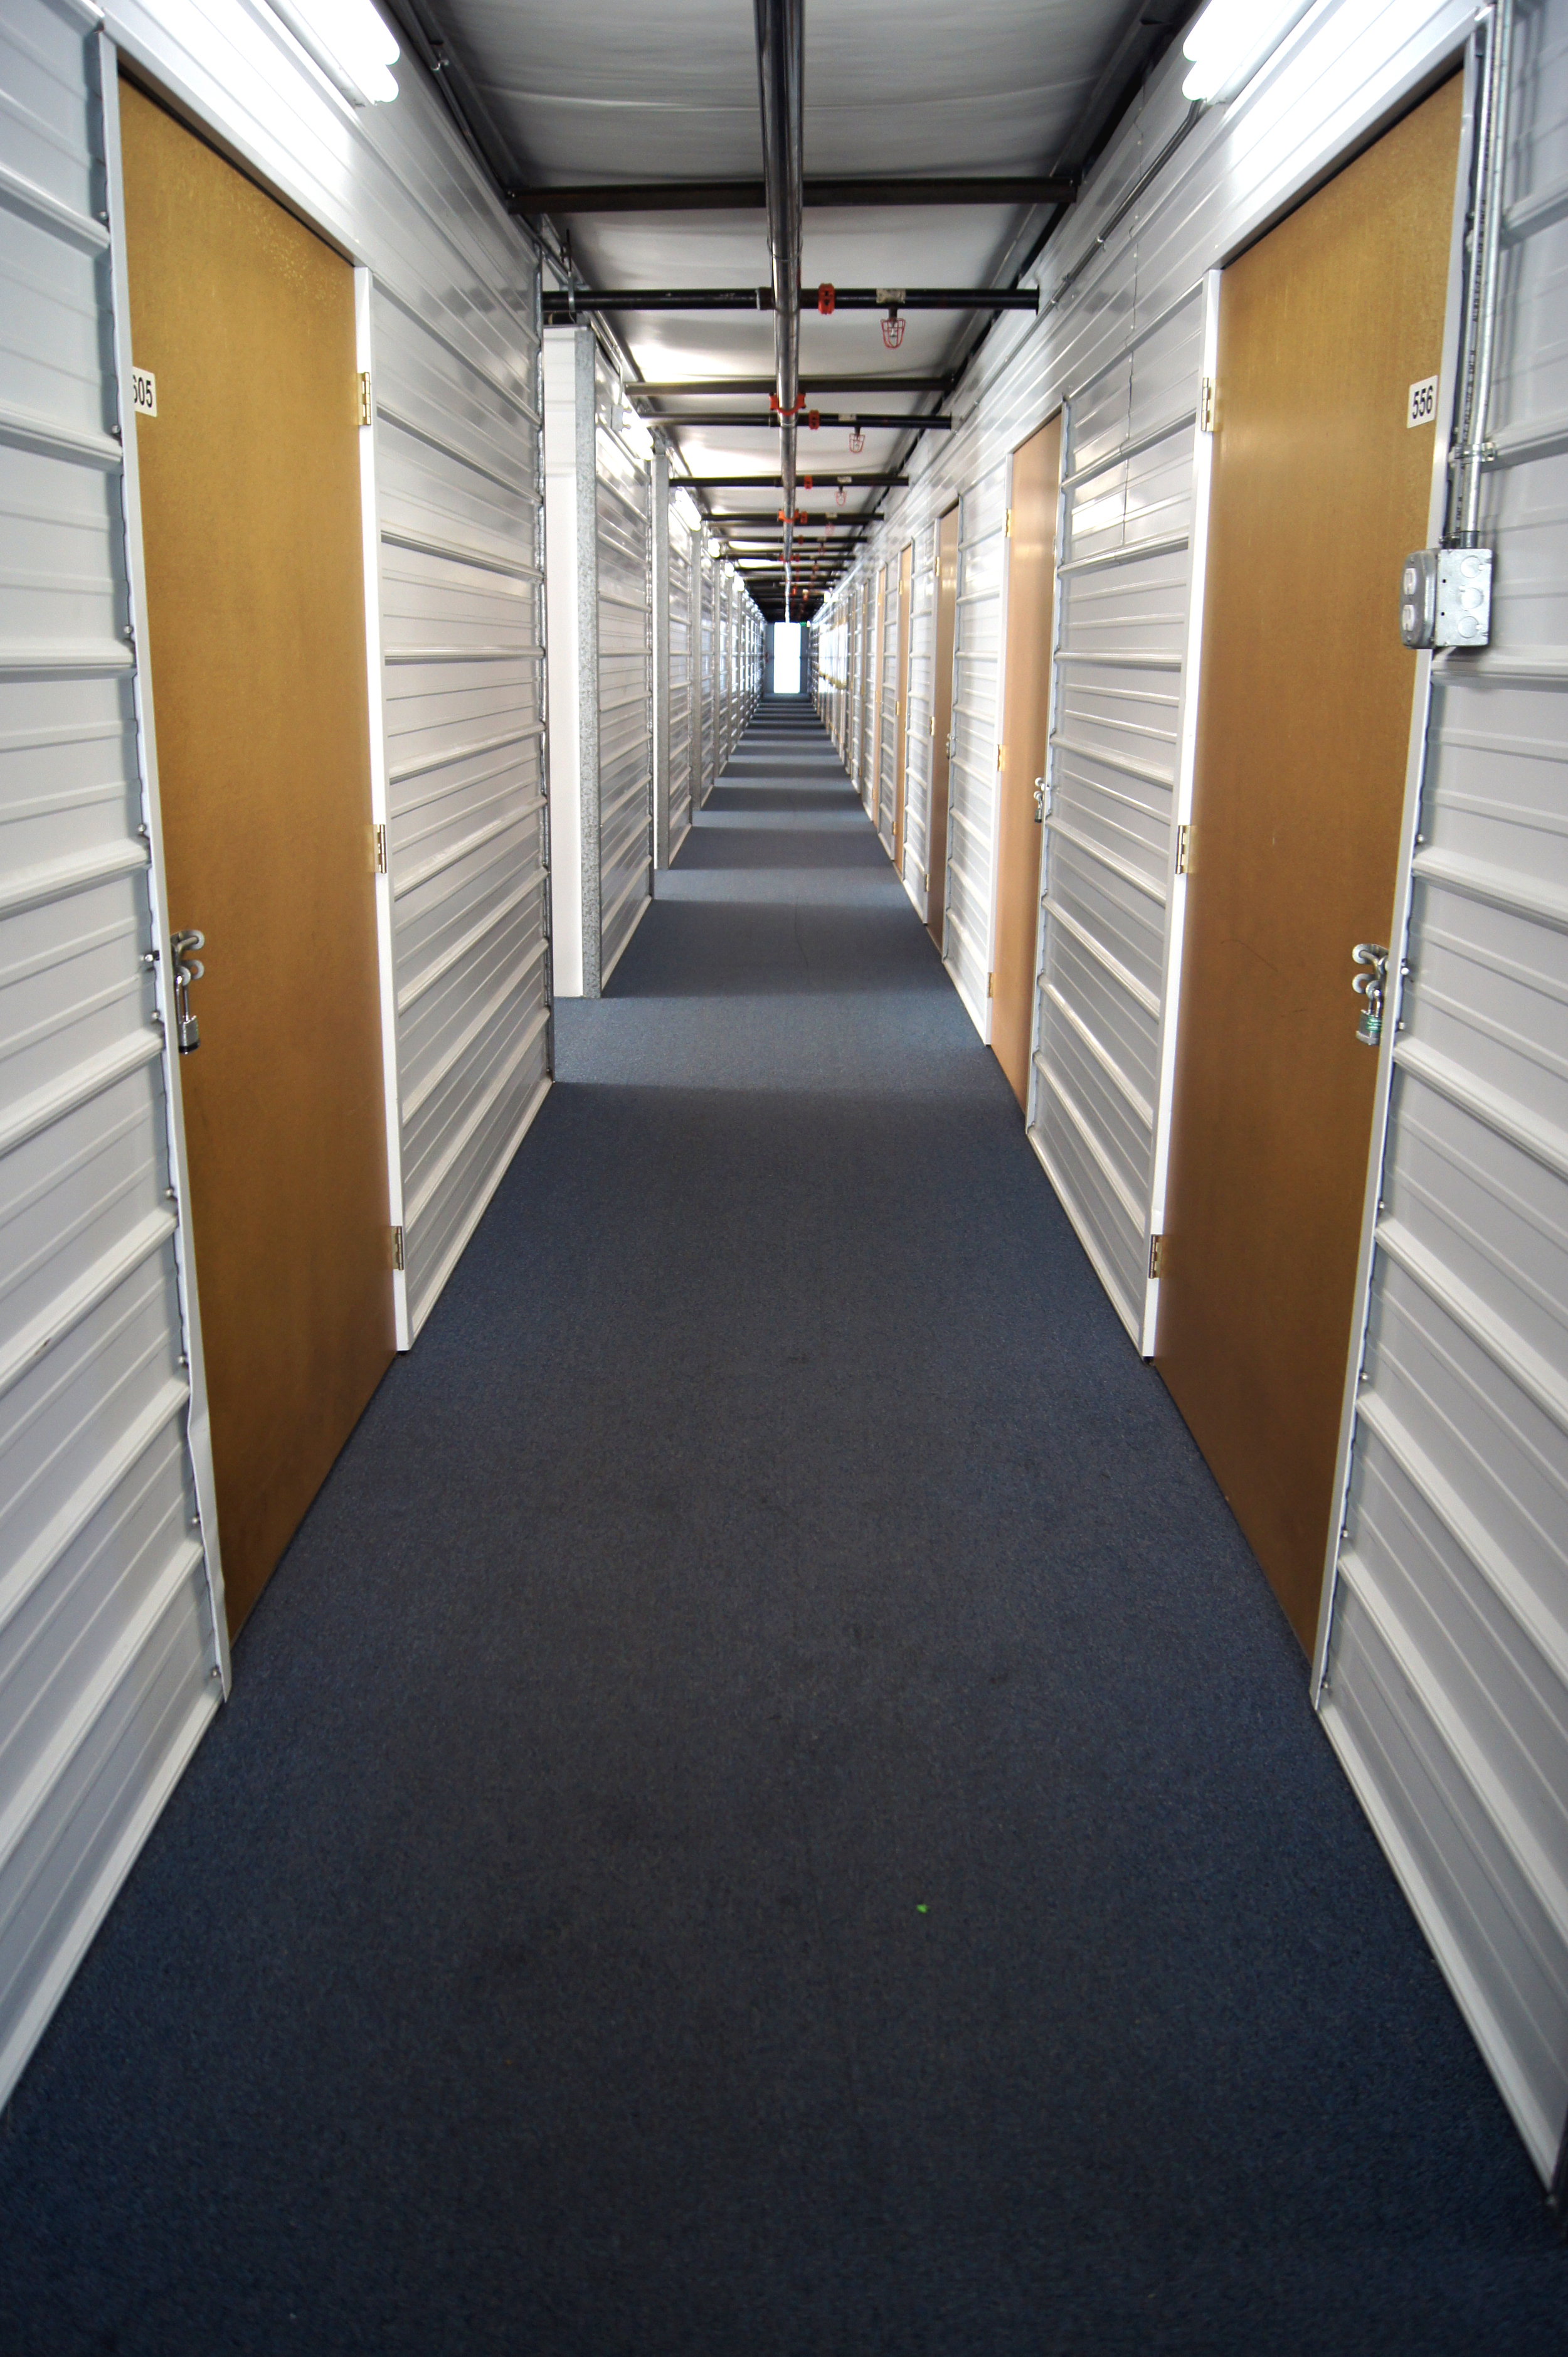 Interior Storage Space at the Annex